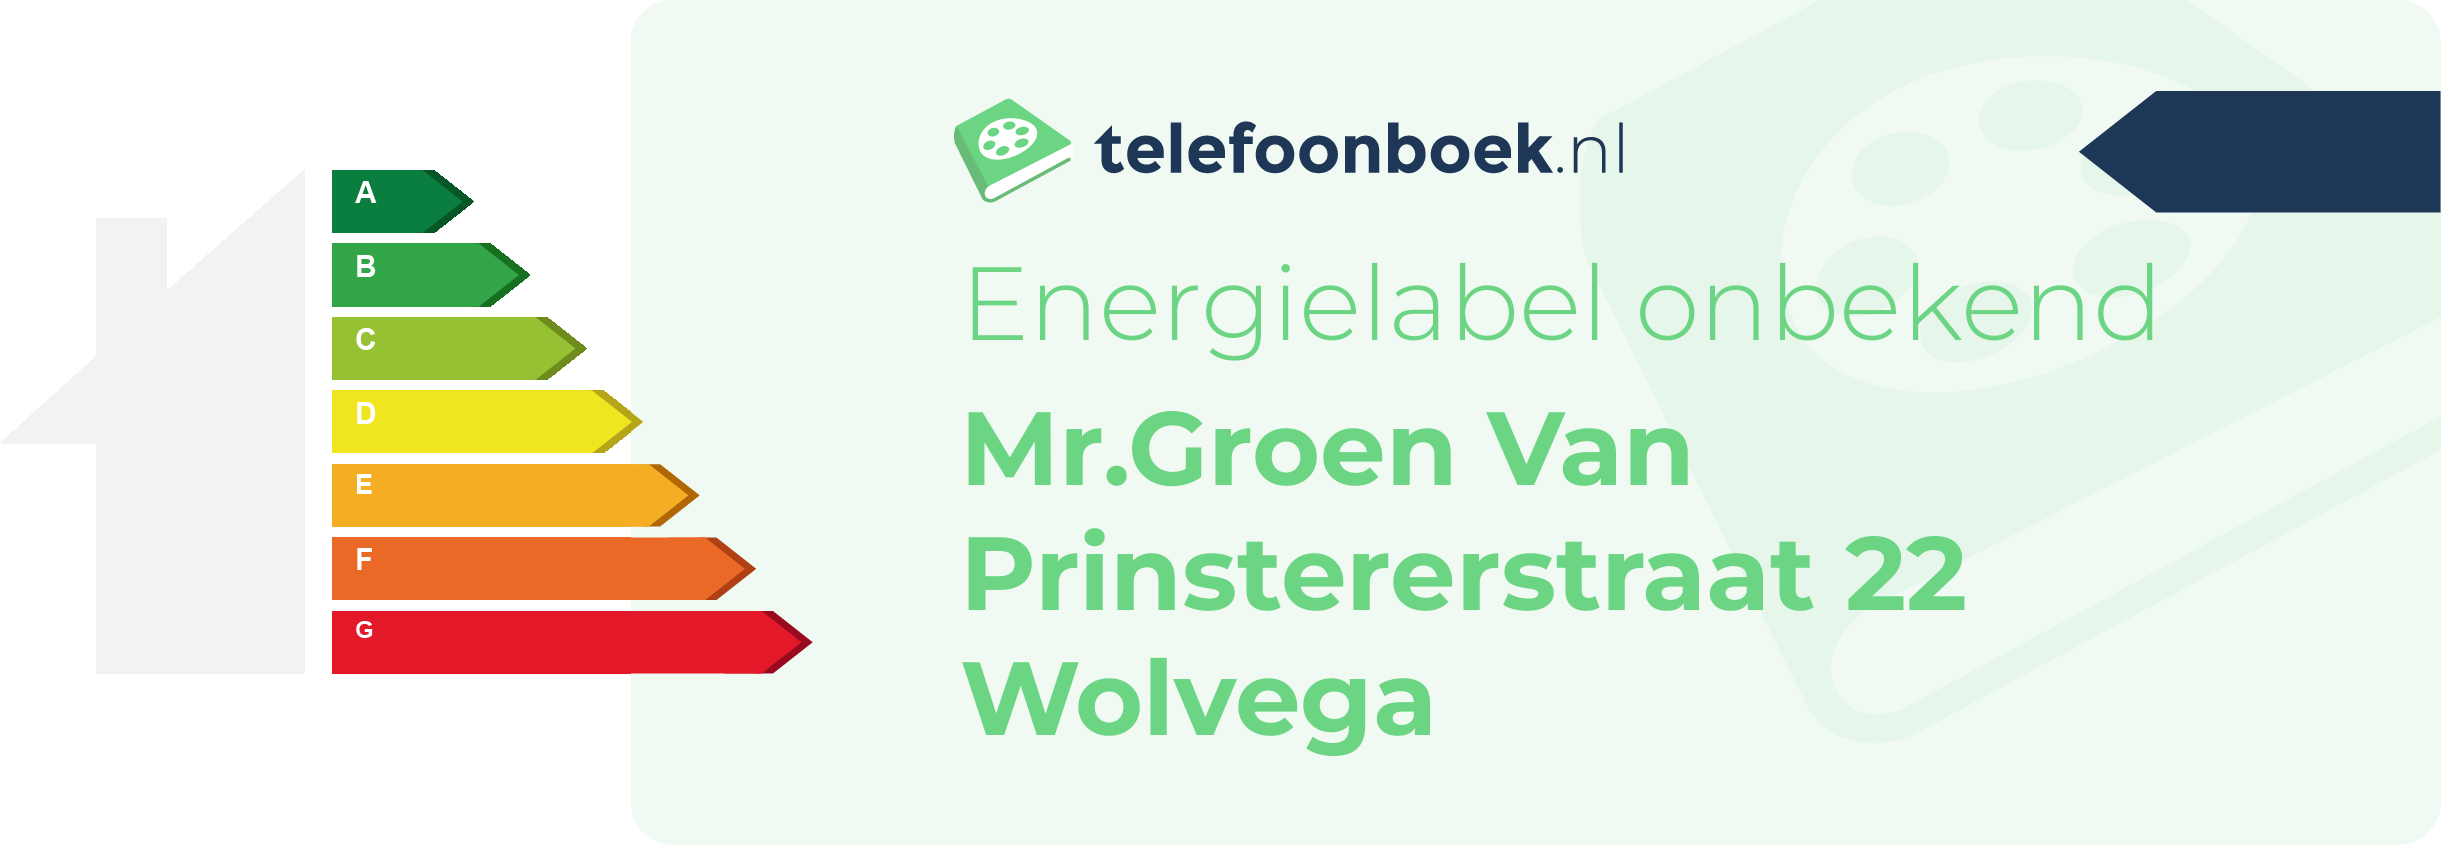 Energielabel Mr.Groen Van Prinstererstraat 22 Wolvega